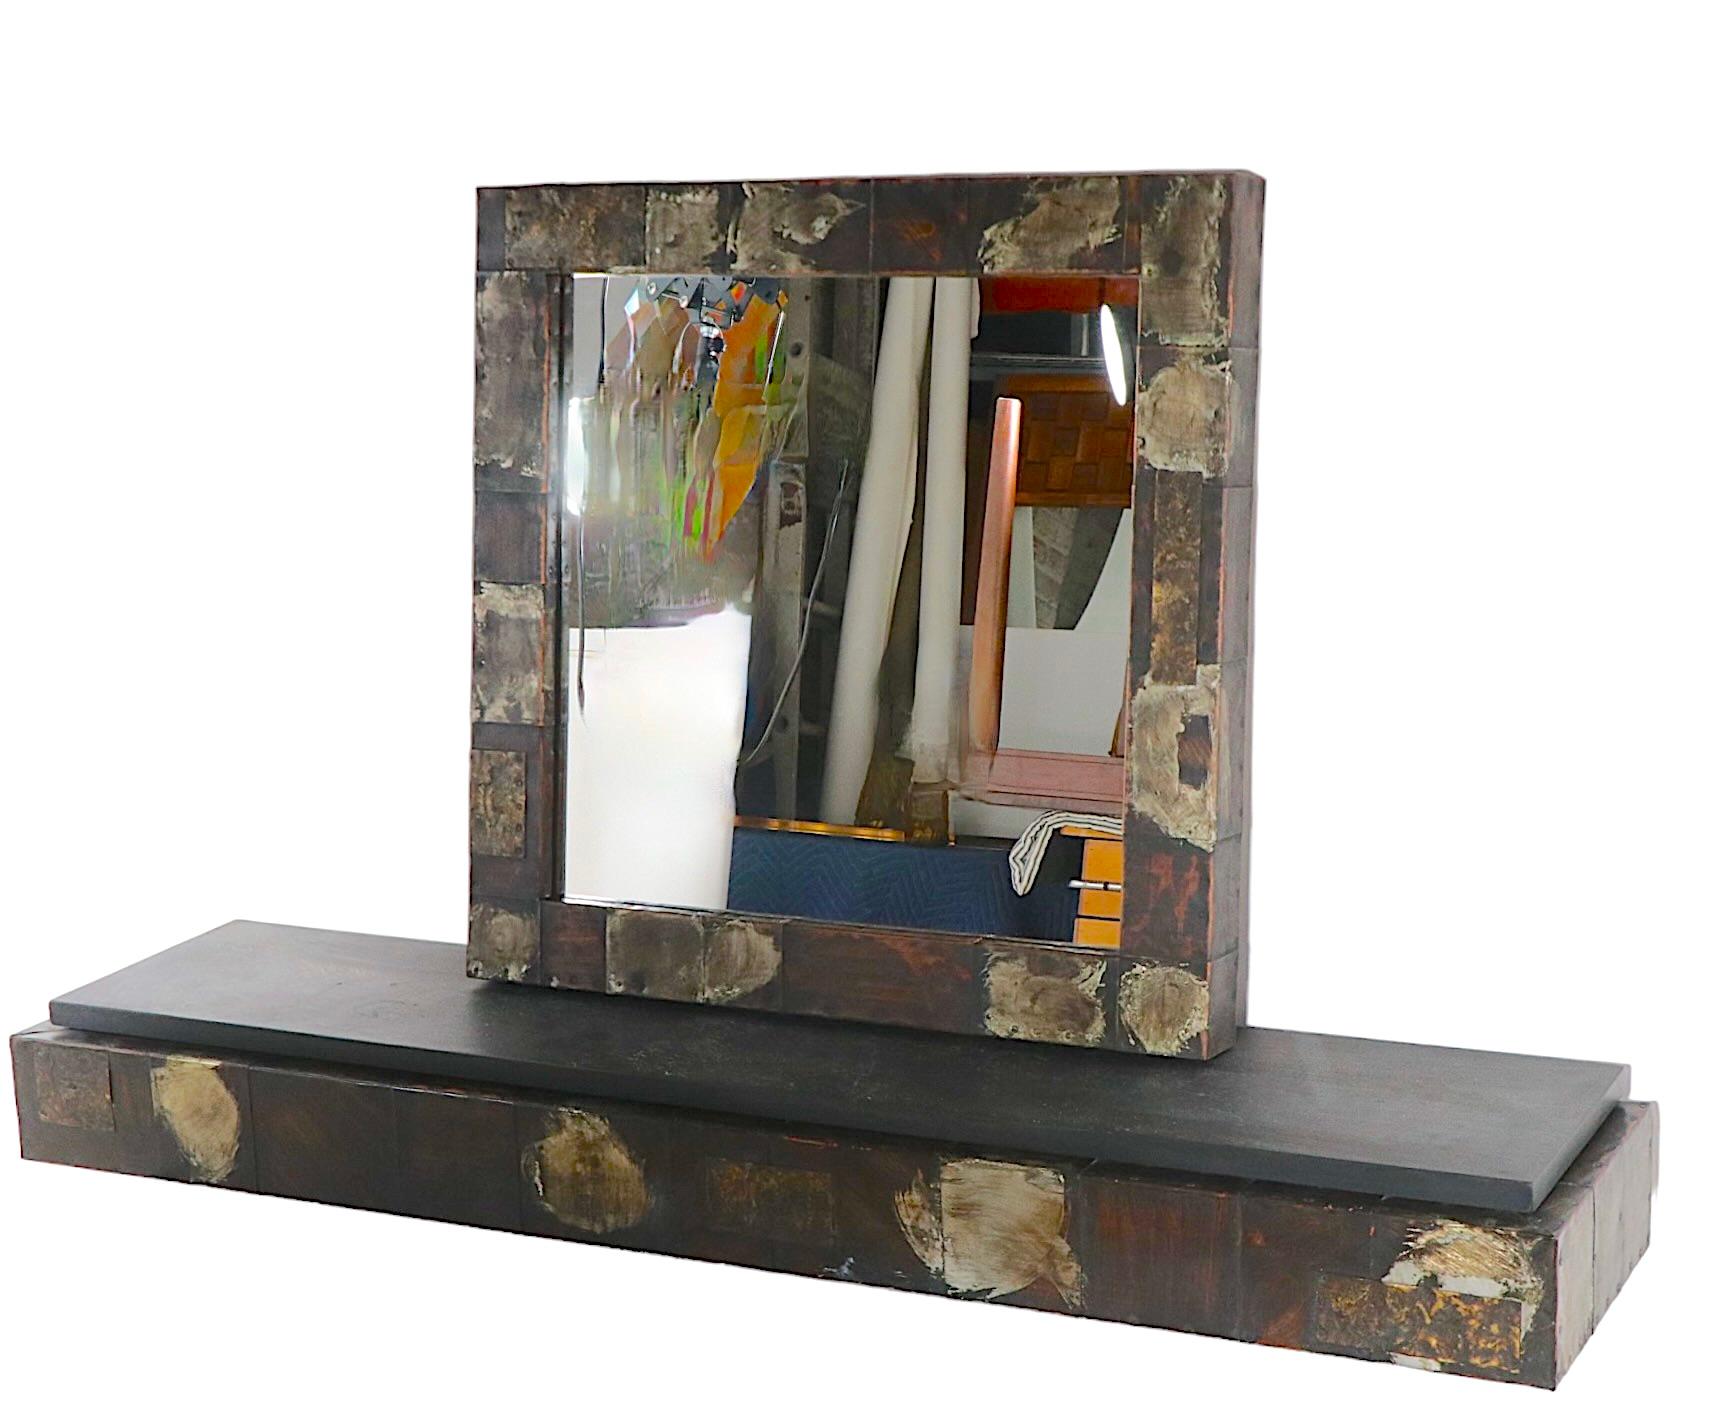 Console classique Paul Evans Brutalist avec dessus en ardoise et miroir assorti avec cadre métallique patchwork. Cet ensemble comprend l'étagère murale extra longue (60 pouces), difficile à trouver, ainsi que le miroir mural original assorti. Les